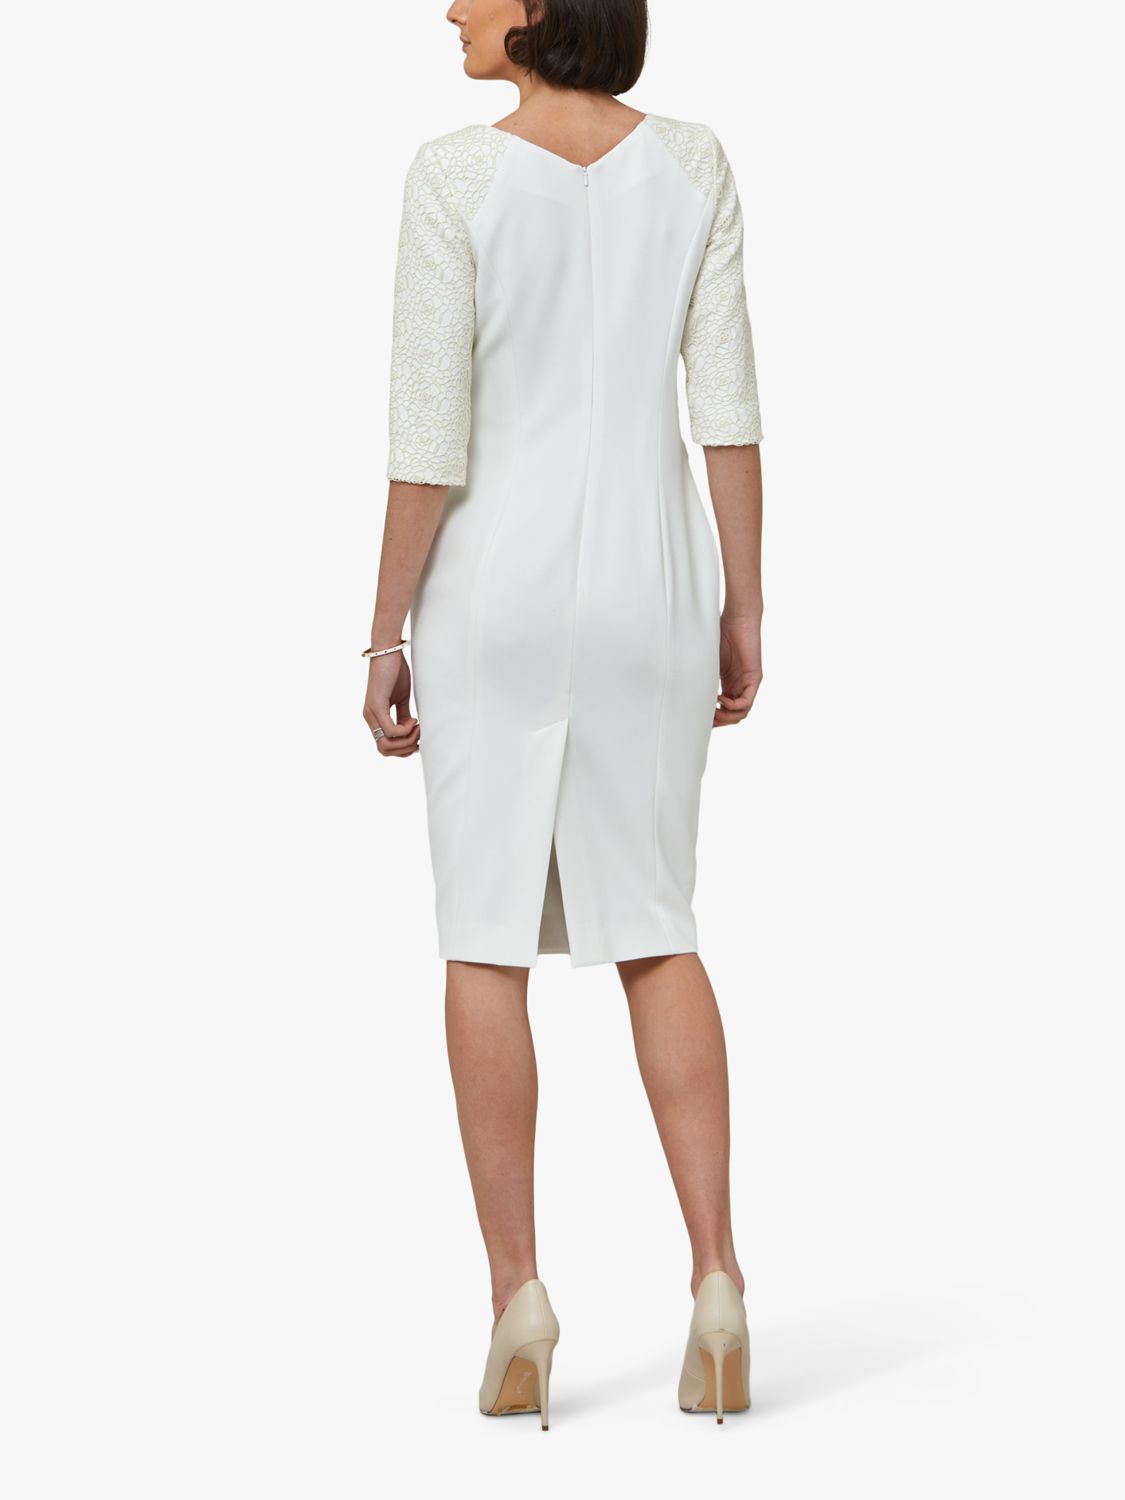 Helen McAlinden Juliet Knee Length Dress, White at John Lewis & Partners